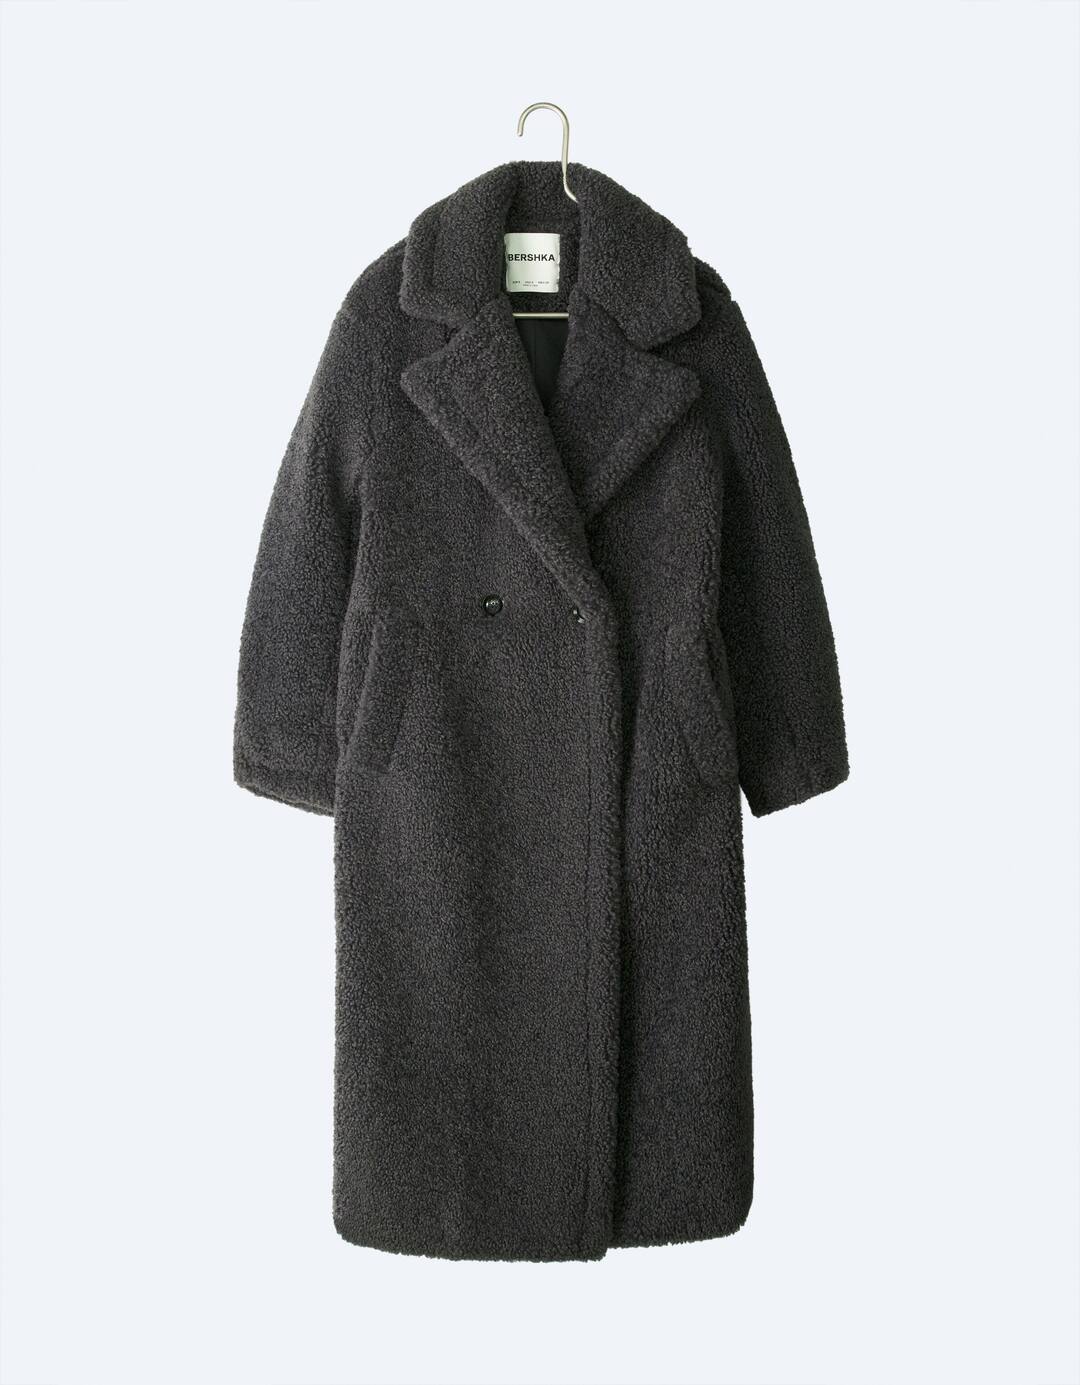 Long faux shearling coat